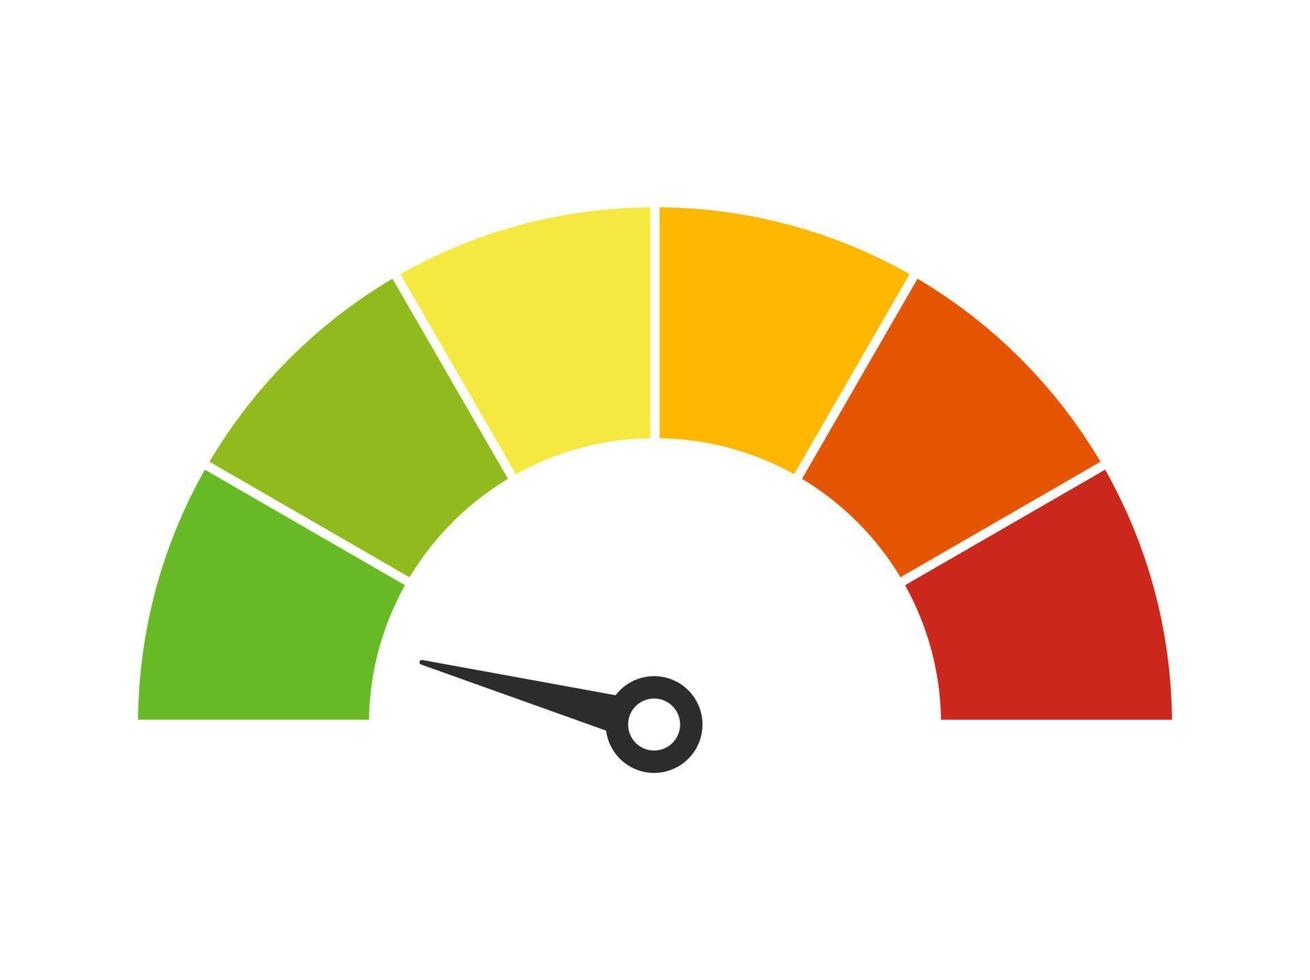 vektor hastighetsmätare meter med pil för instrumentbräda med grön, gul, orange och röd indikatorer. mätare av varvräknare. låg, medium, hög och risk nivåer. bitcoin rädsla och girighet index kryptovaluta